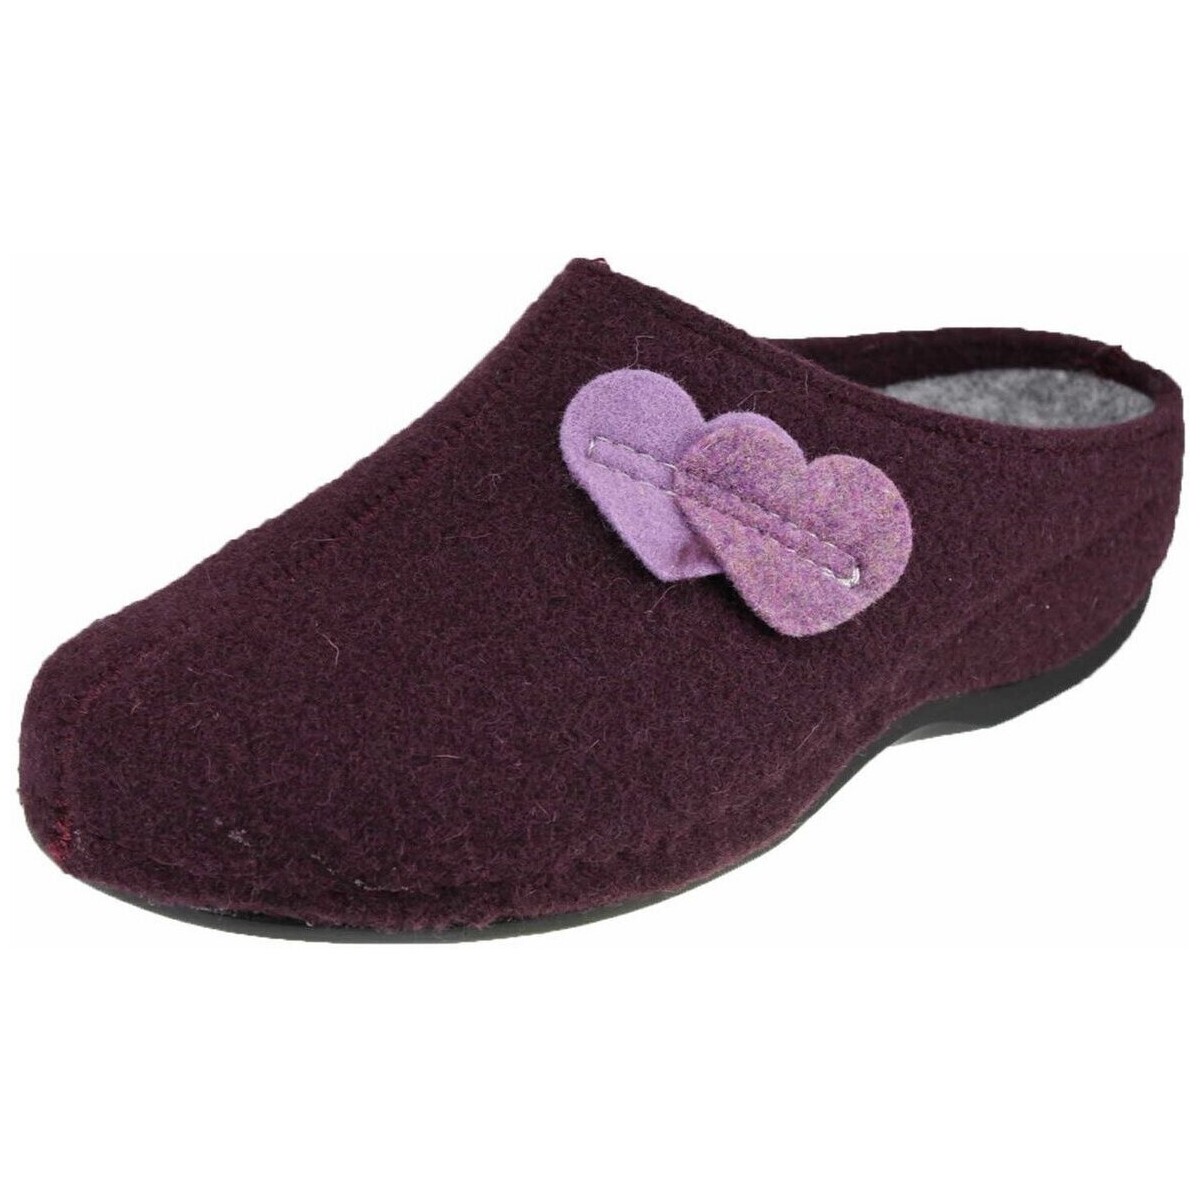 Schuhe Damen Hausschuhe Westland bordo- 11502-54-412 Cholet 02 Violett